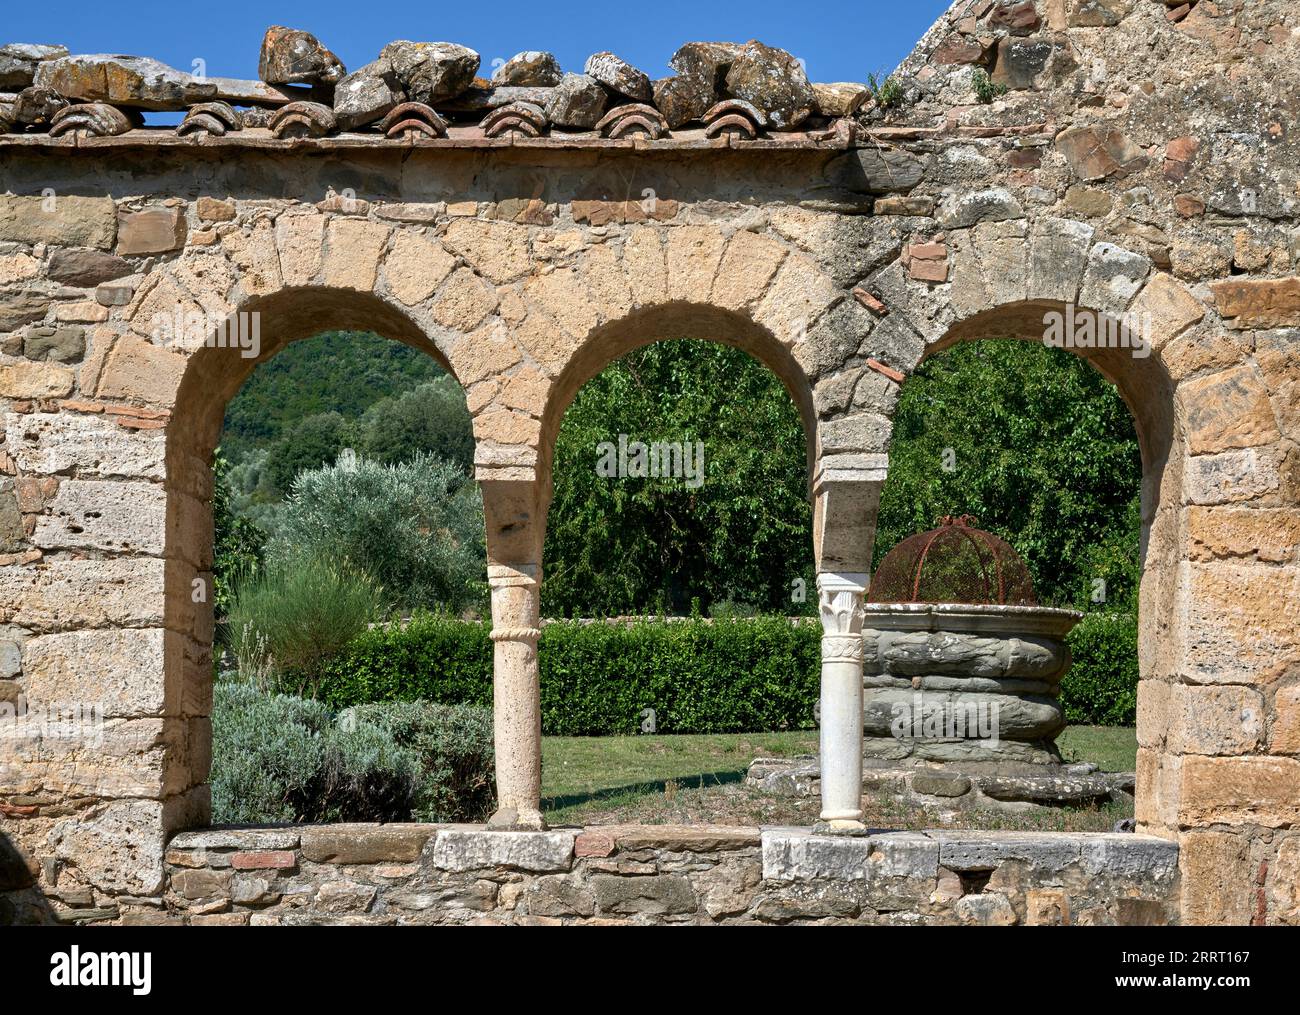 una parete con finestre e capitelli della biblioteca - XII secolo - Montalcino (Si), Abbazia di S. Antimo Stockfoto